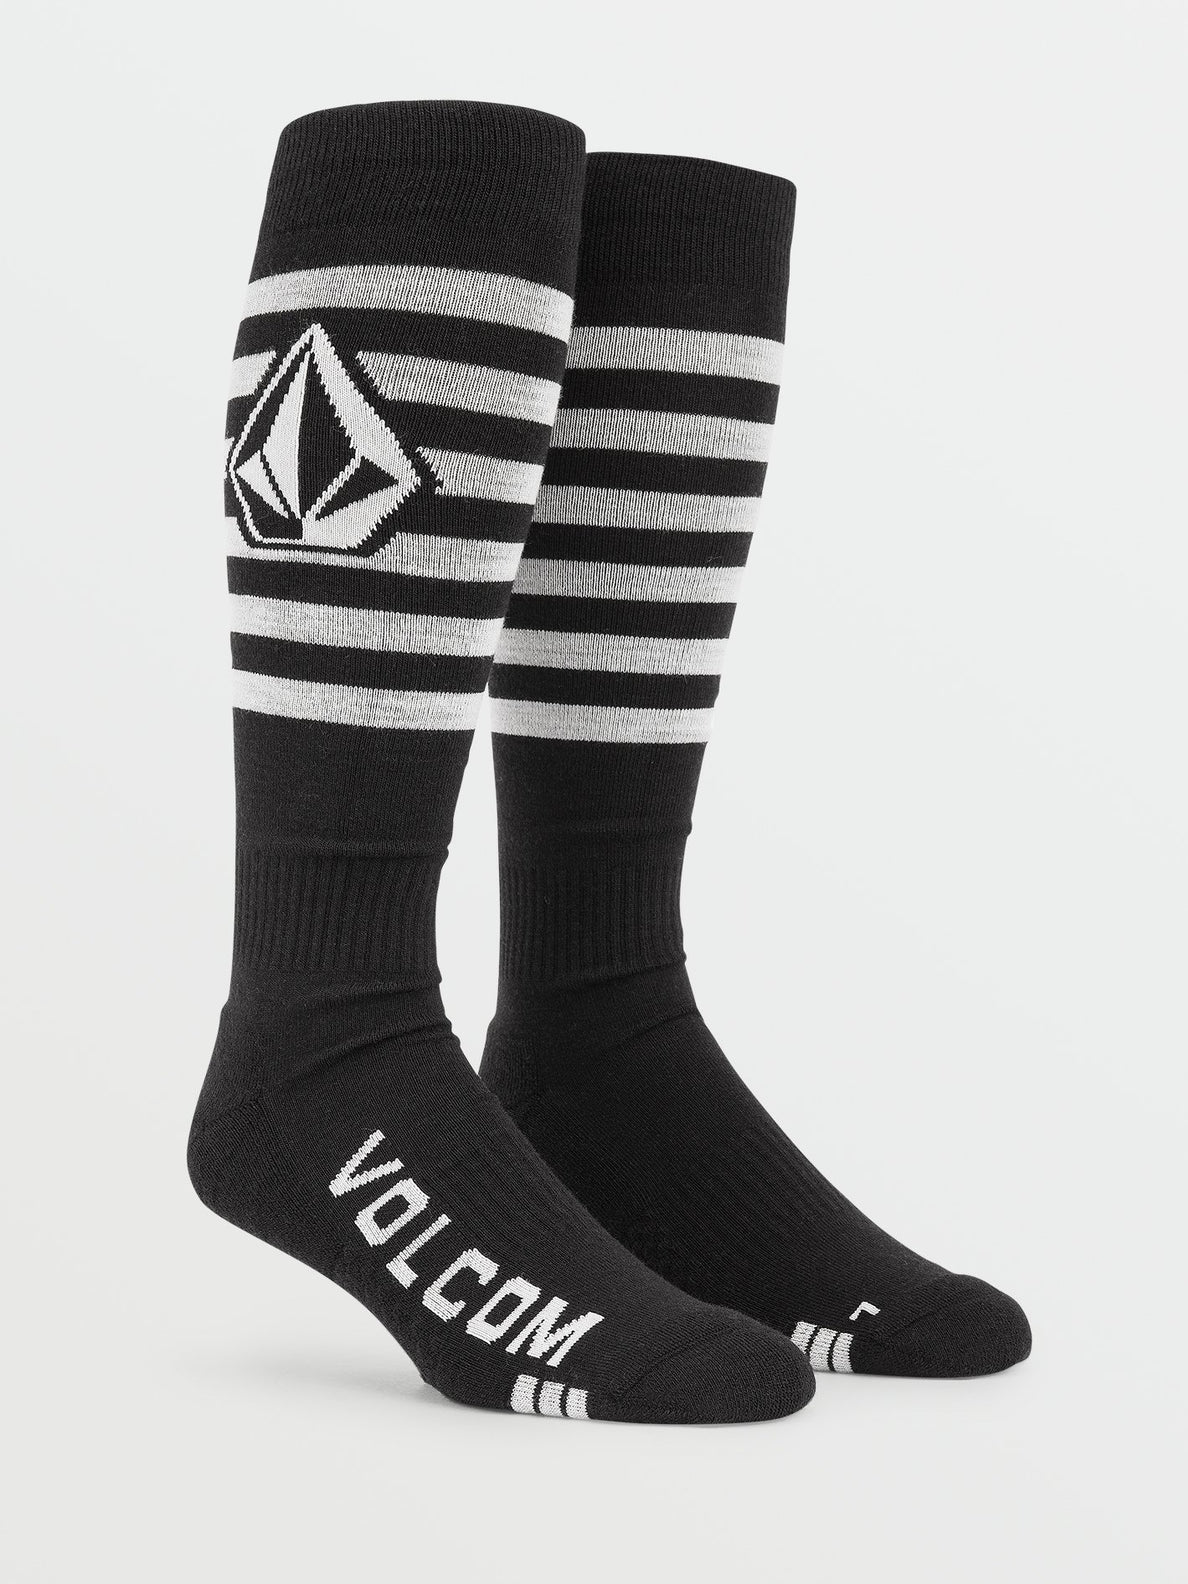 Kootney Sock - BLACK (J6352200_BLK) [F]